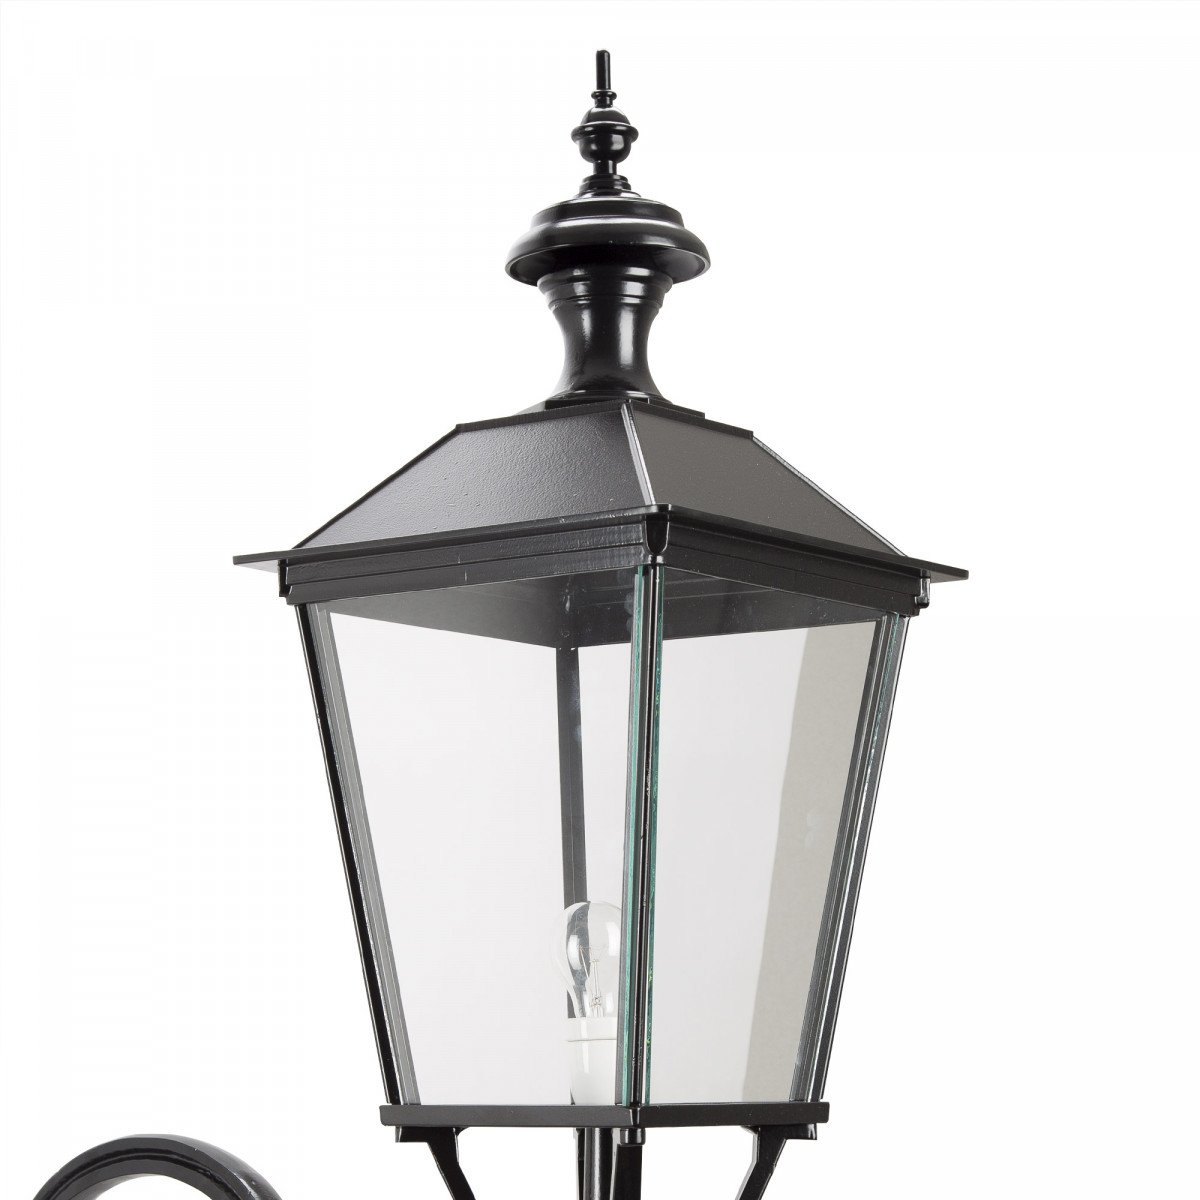 Klassieke buitenverlichting buitenlamp Singel XL exclusieve stijlvol klassiek vormgegeven buiten wandverlichting van KS Verlichting